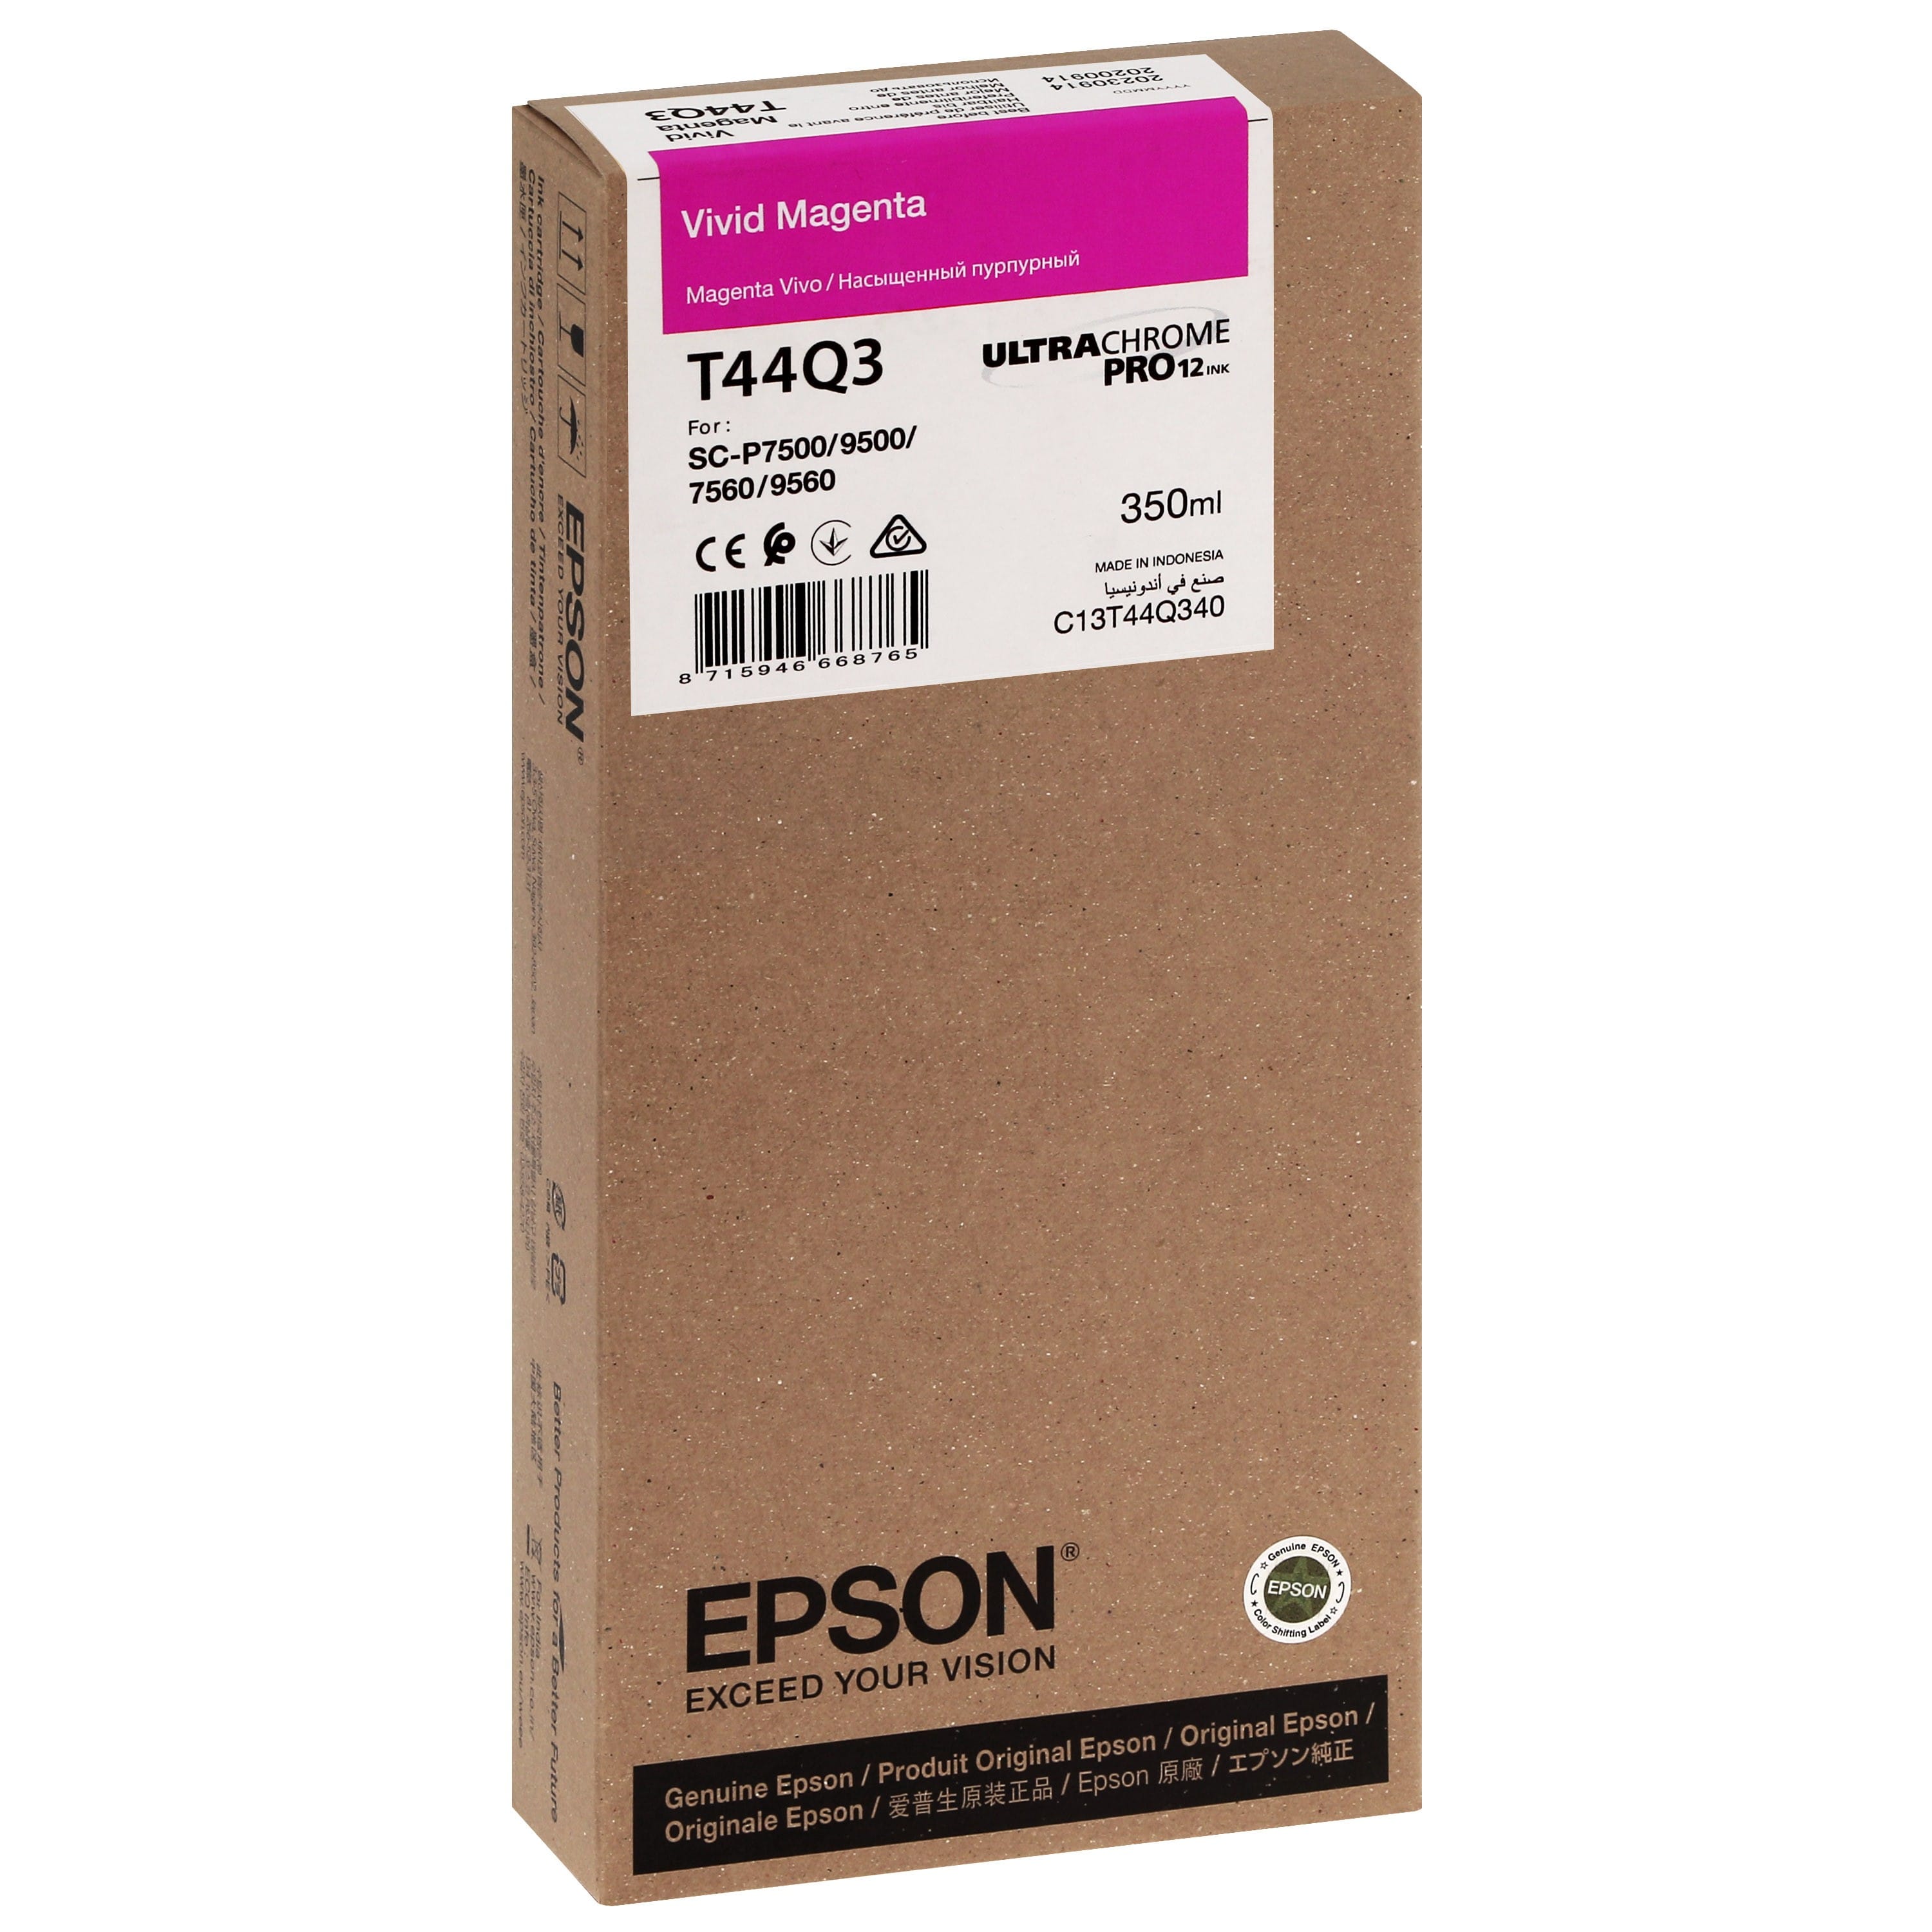 EPSON - Cartouche d'encre traceur T44Q3 Pour imprimante SC-P7500/9500 UltraChrome PRO Vivid Magenta - 350ml